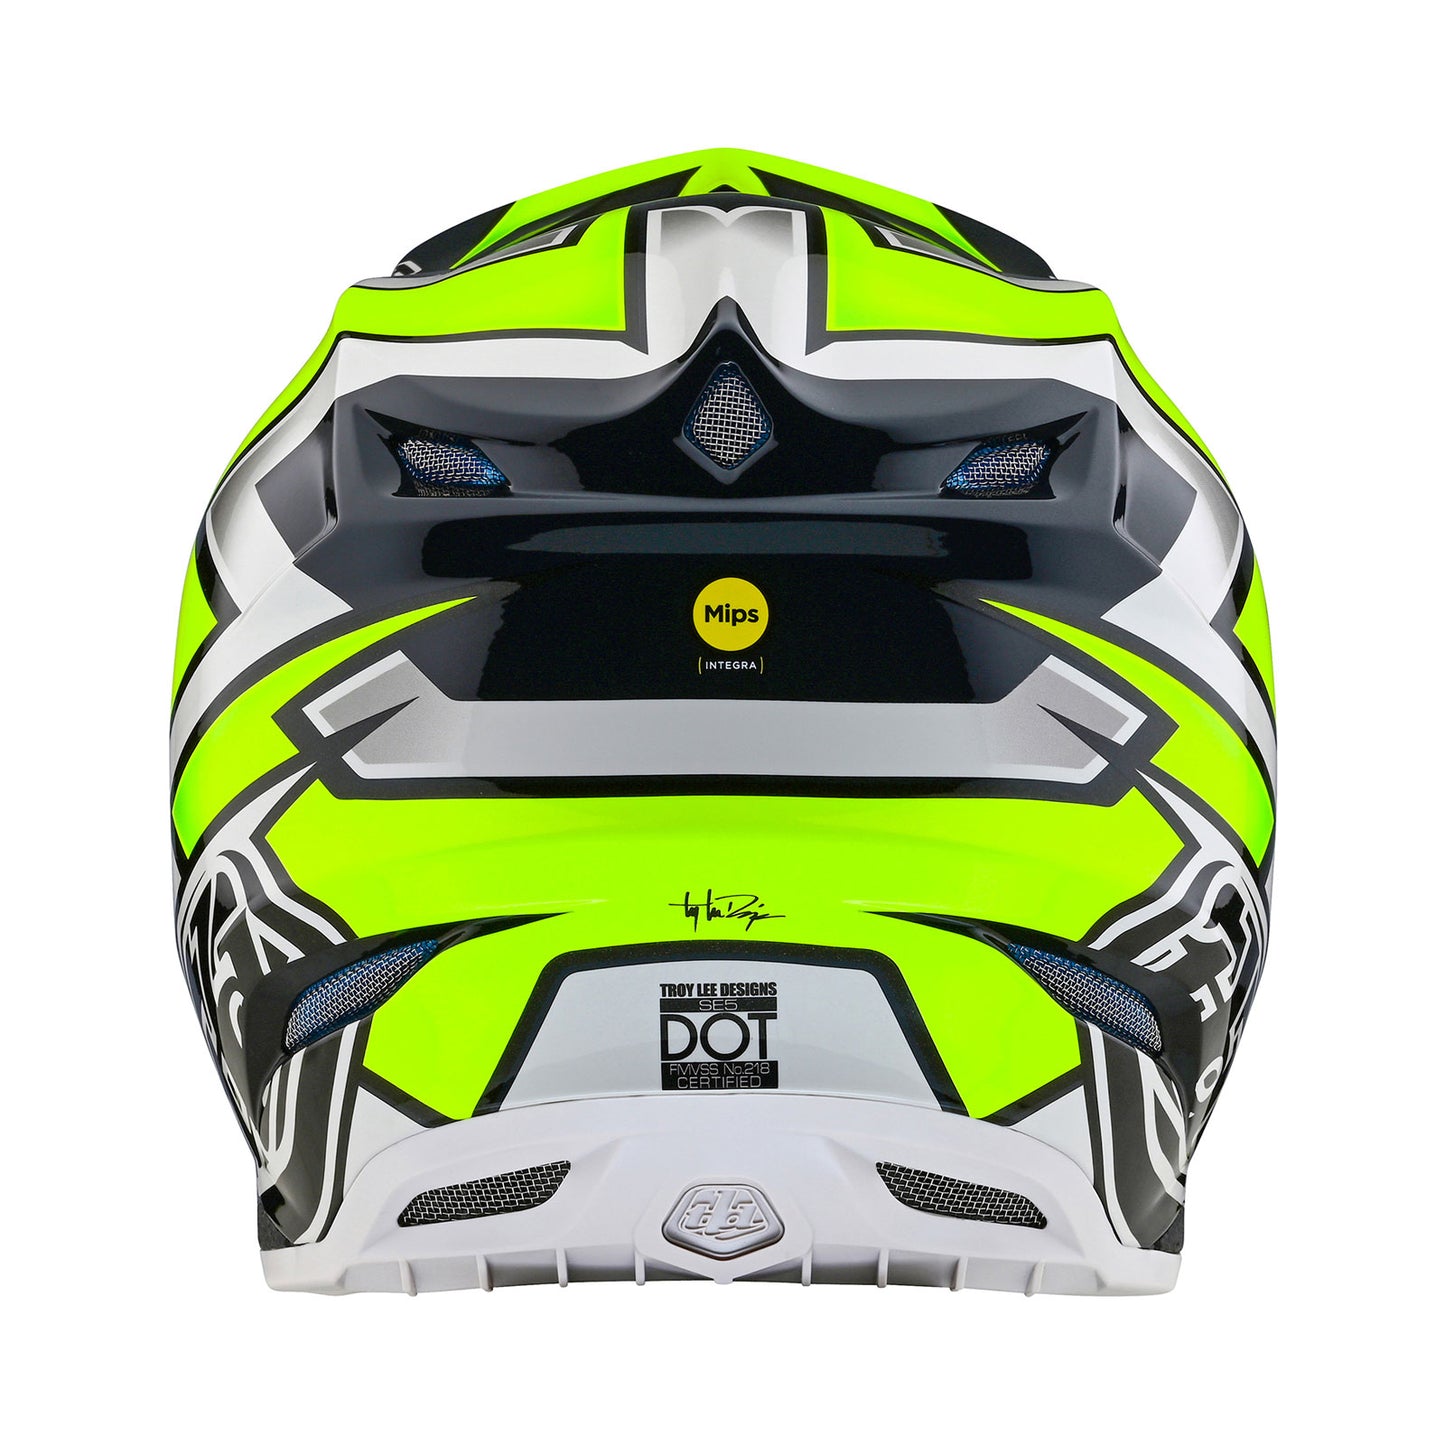 SE5 Composite Helmet Ever Gray / Yellow